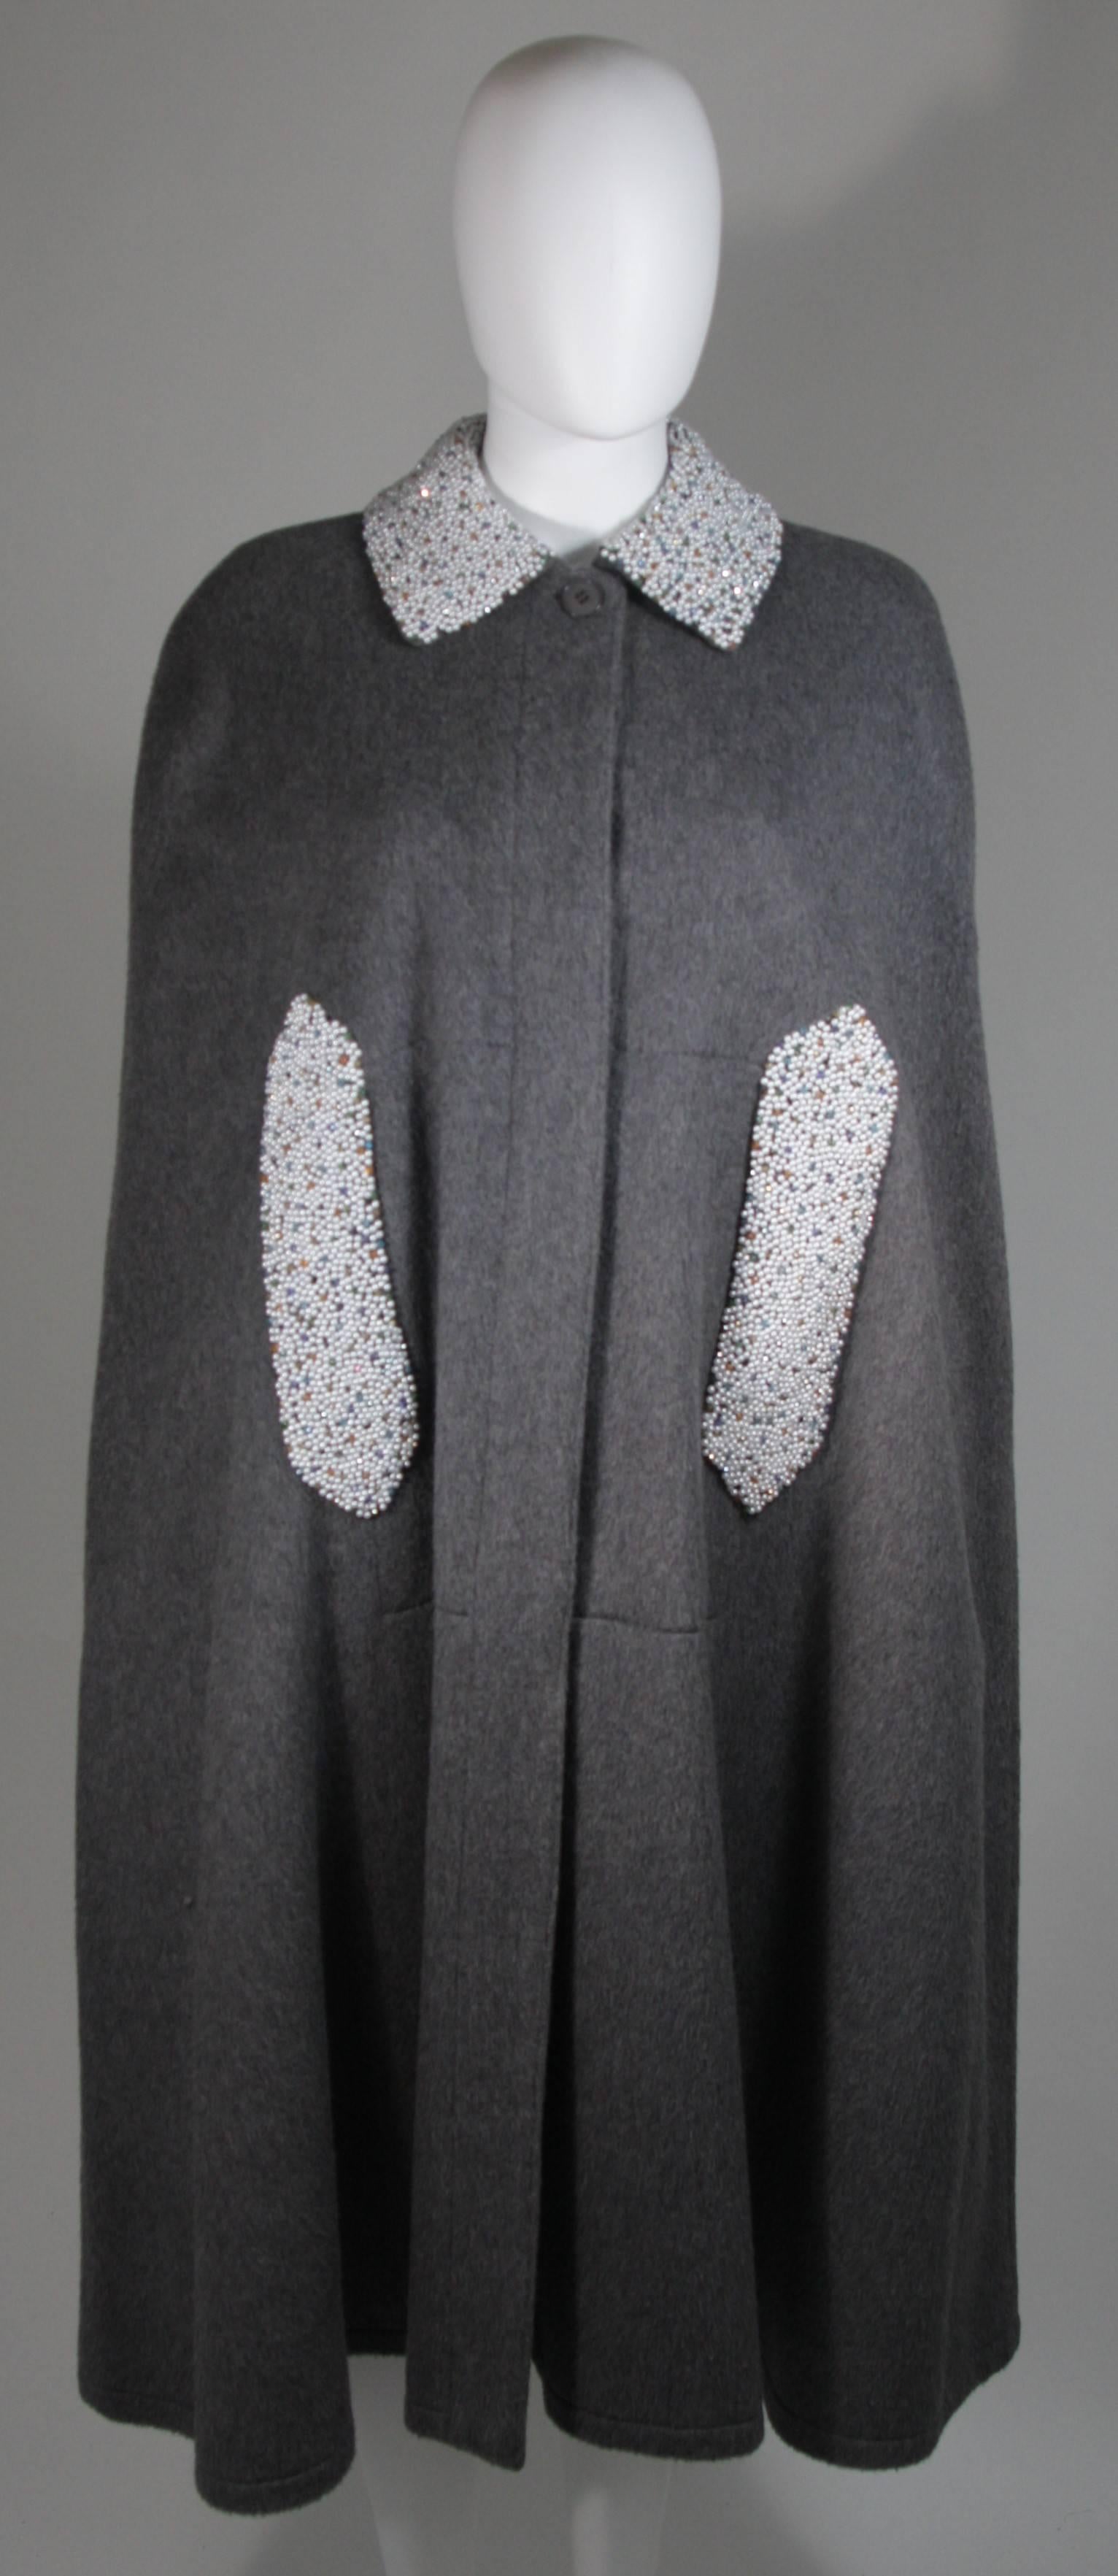  Dieser Umhang besteht aus einer grauen Wolle. Der Umhang ist ein Vintage-Design mit einem modernen Twist, die Perlen- und Strassperlen an den Taschen sind eine moderne Ergänzung von 'Vutique'. Der Mantel ist vorne mit Knöpfen zu schließen. In